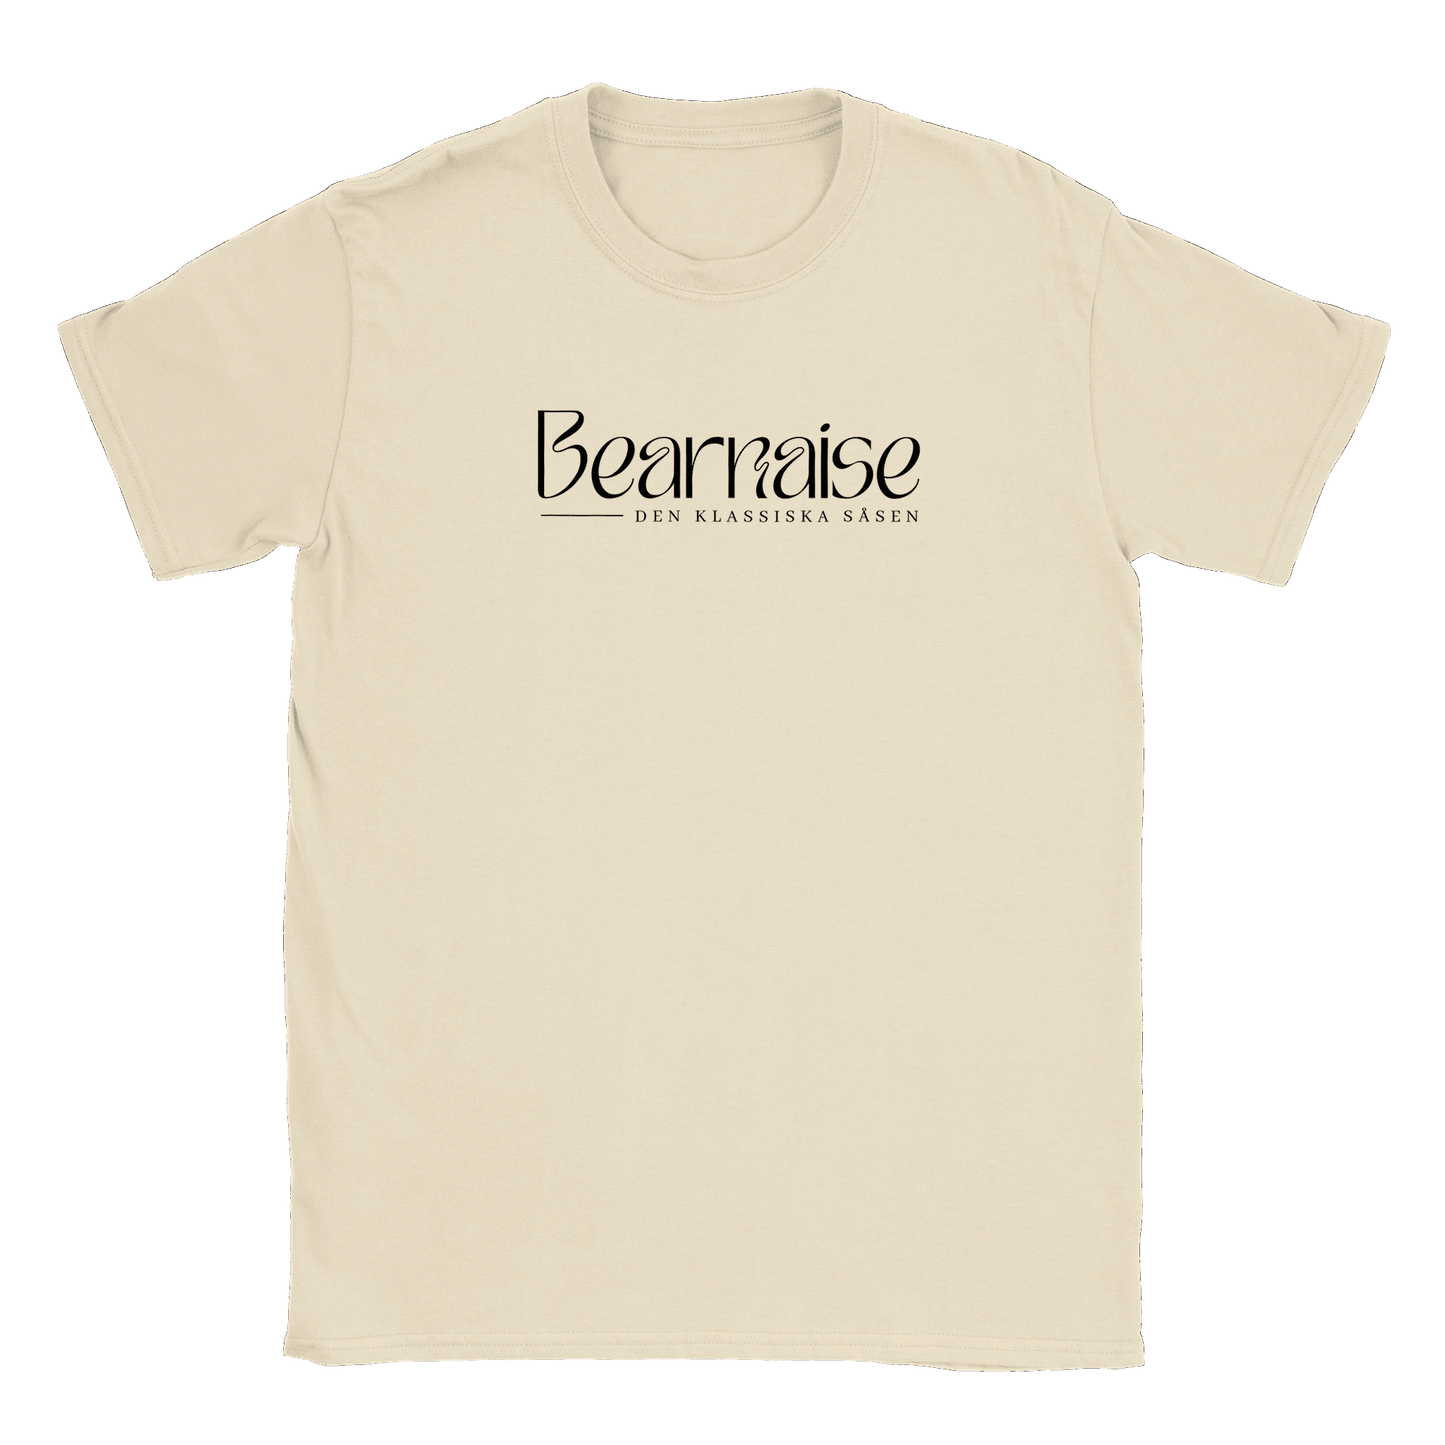 Bearnaisesås - T-shirt Natural